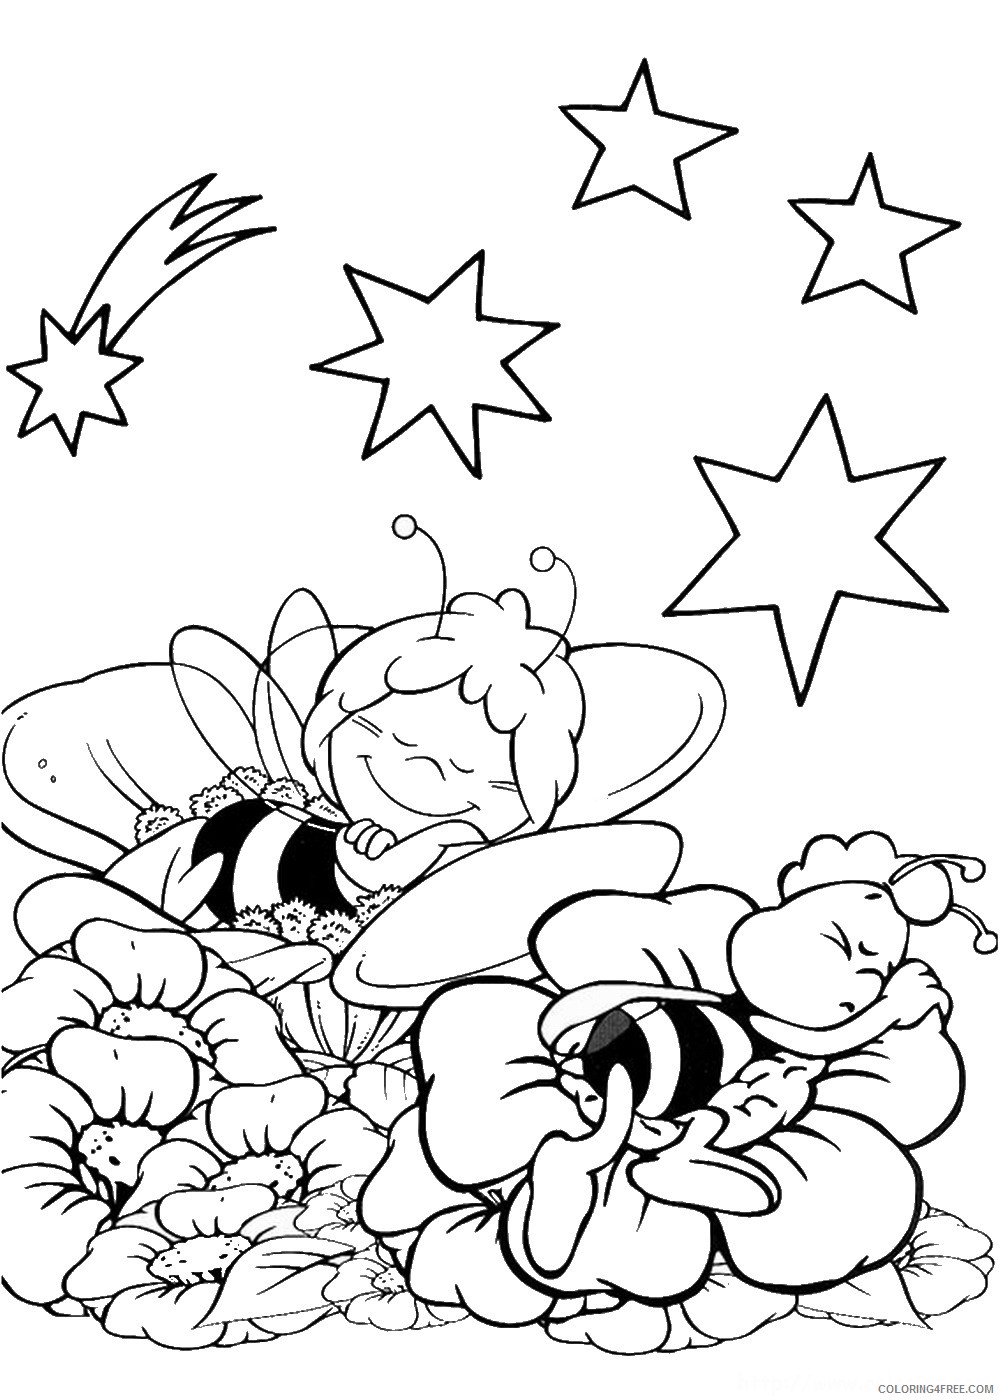 Maya the Bee Coloring Pages Cartoons maya_cl_09 Printable 2020 4008 Coloring4free